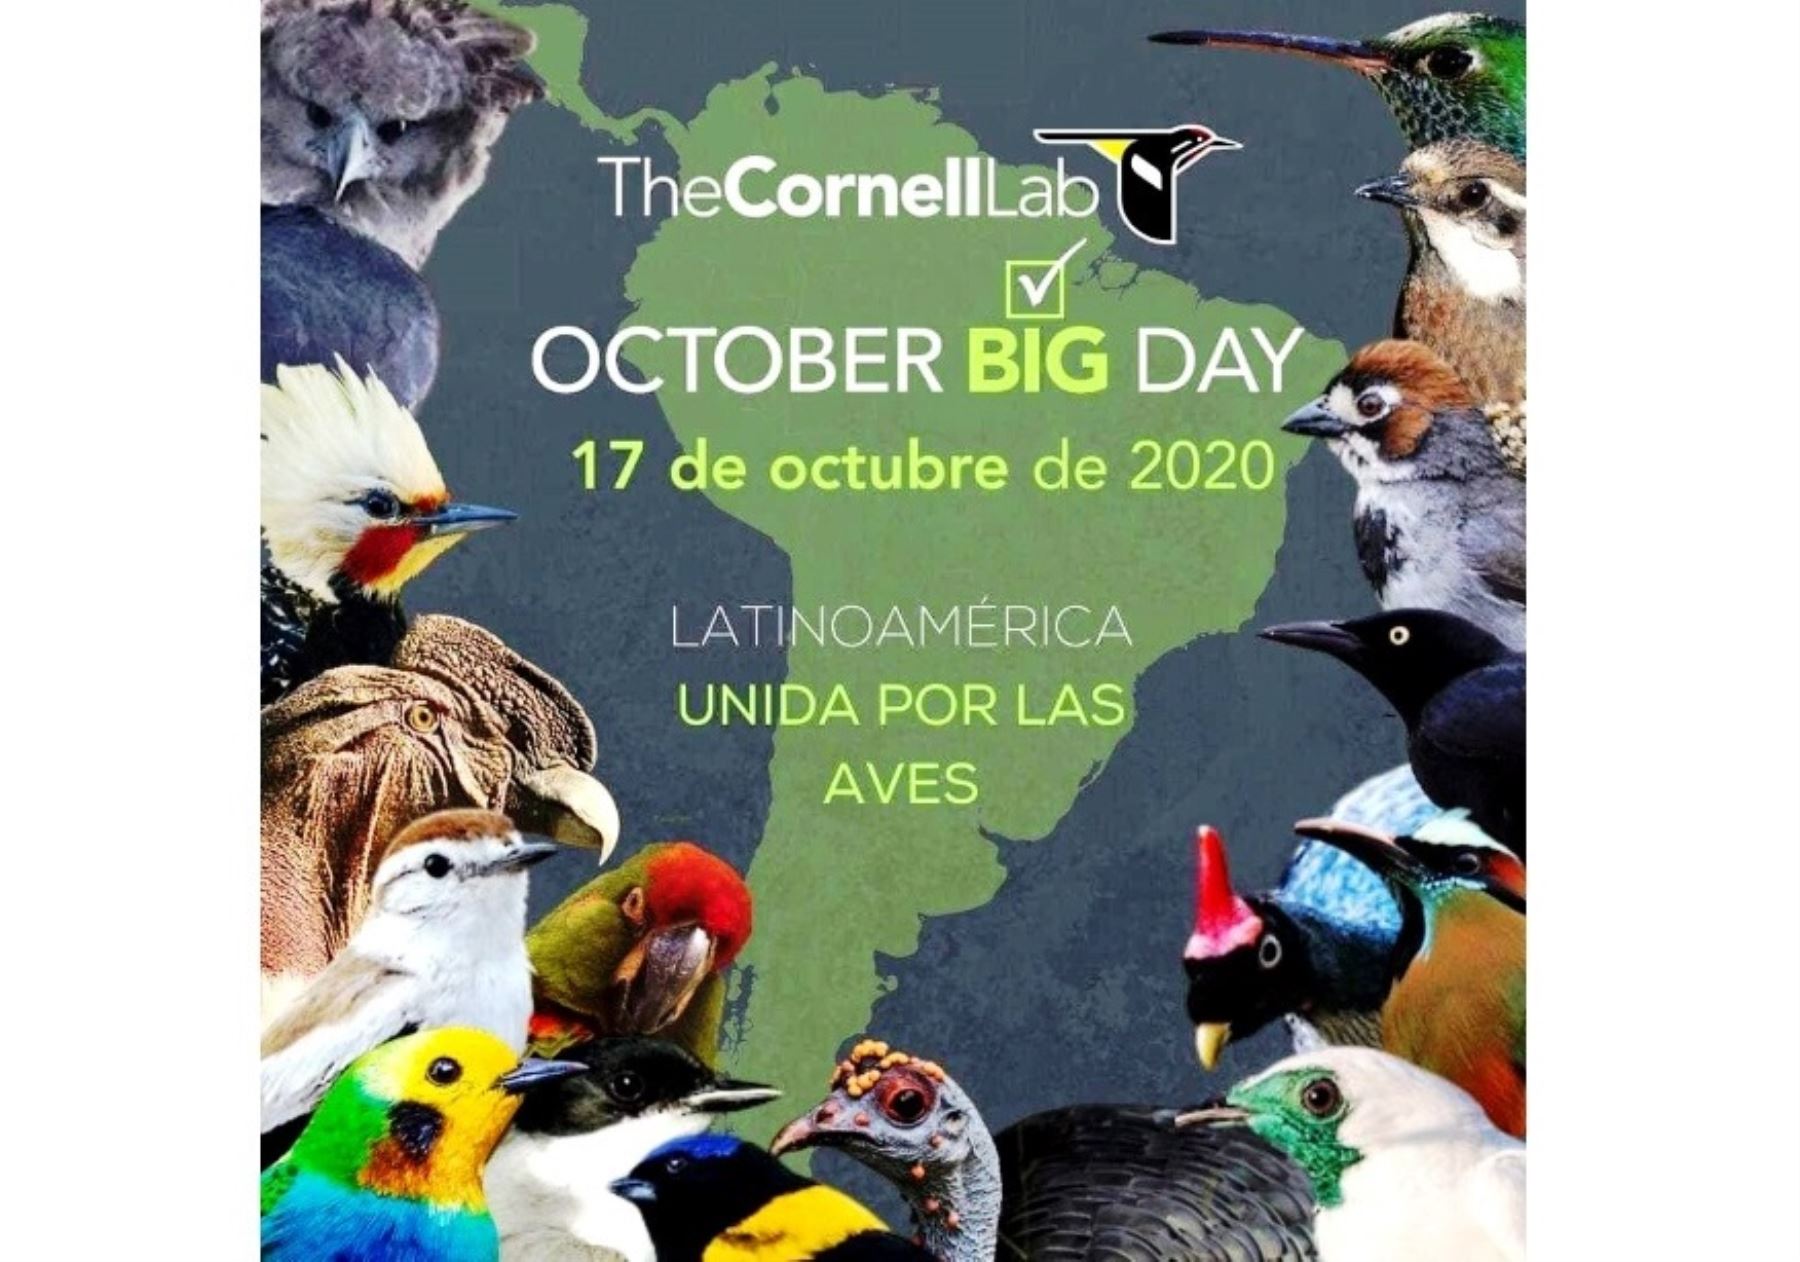 Cajamarca se prepara para participar de concurso mundial de observación de aves que se desarrollará mañana sábado 17 de octubre. La competencia será bajo una nueva modalidad pospandemia de covid-19.